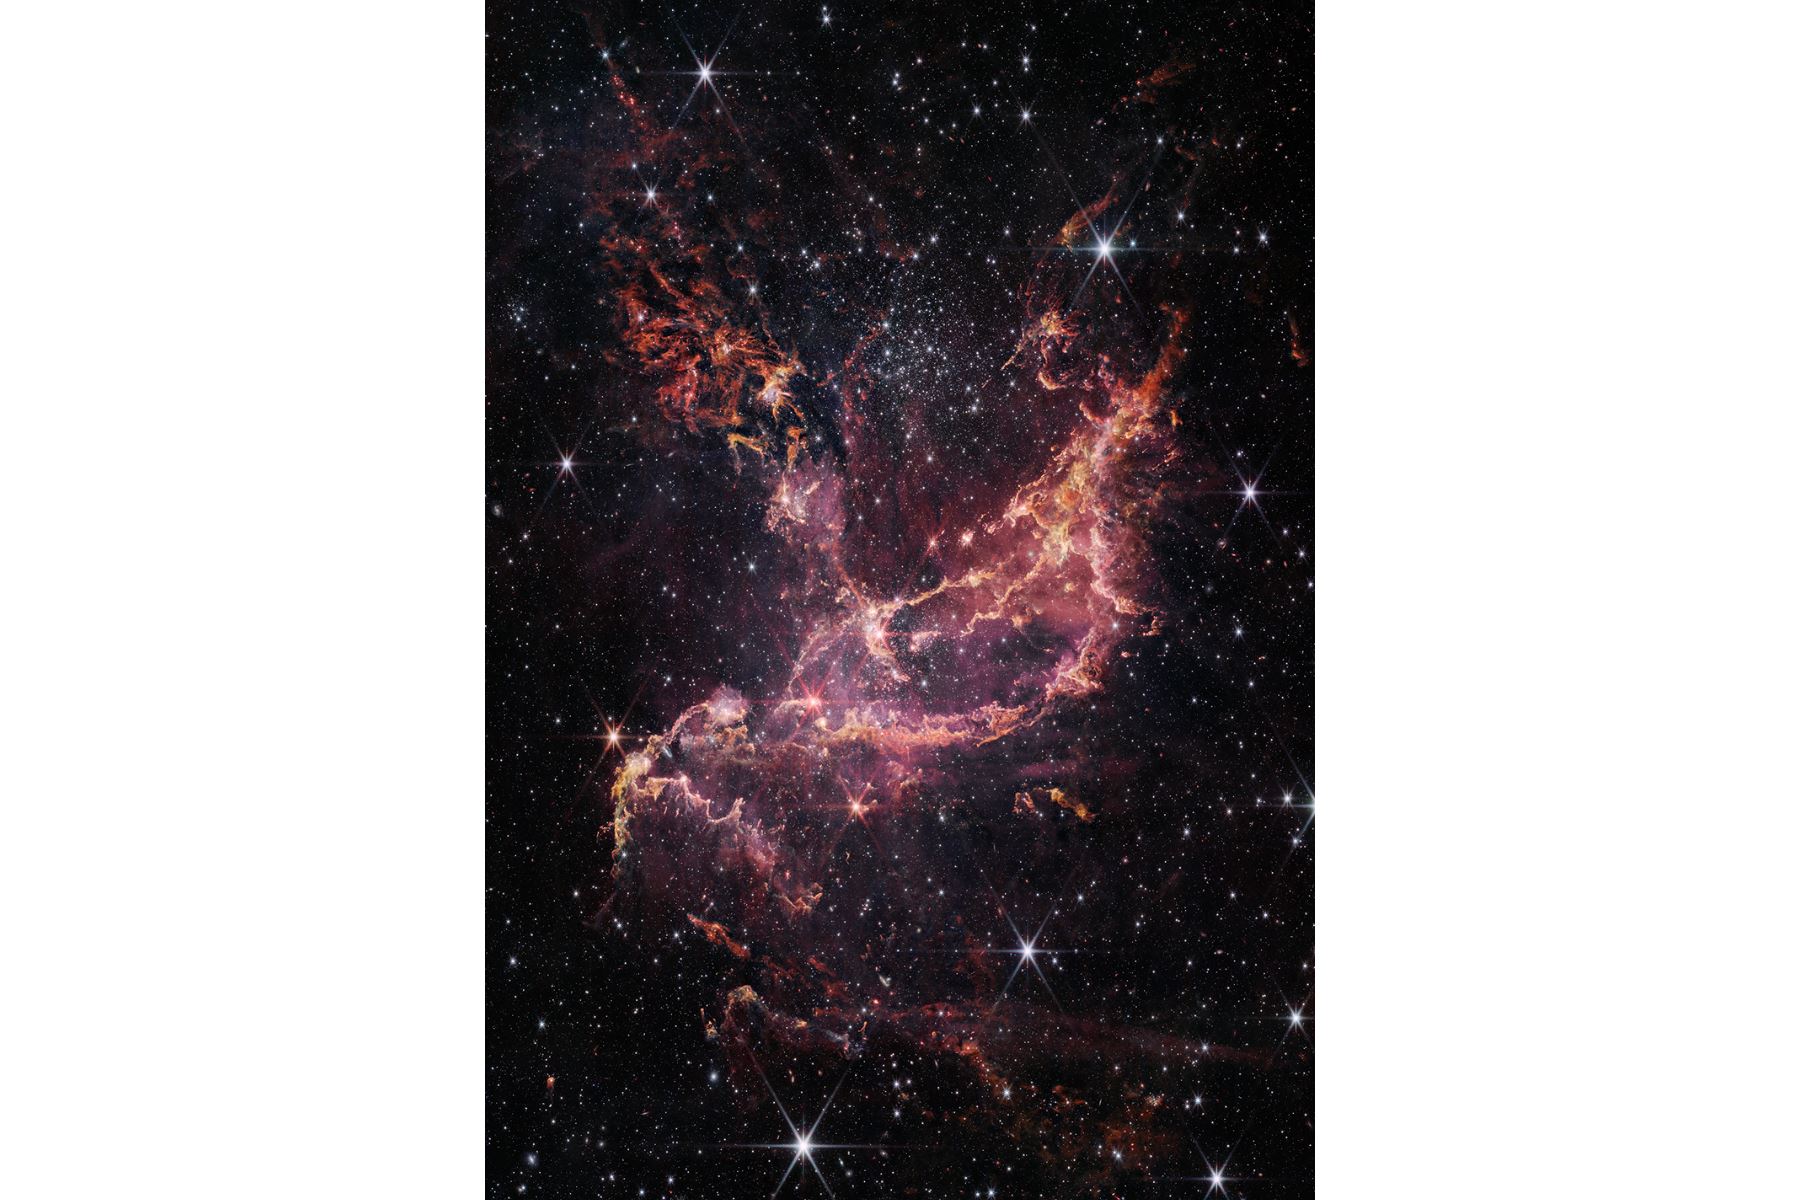 La Pequeña Nube de Magallanes (SMC) es una galaxia irregular ubicada a 200,000 años luz de la Vía Láctea.